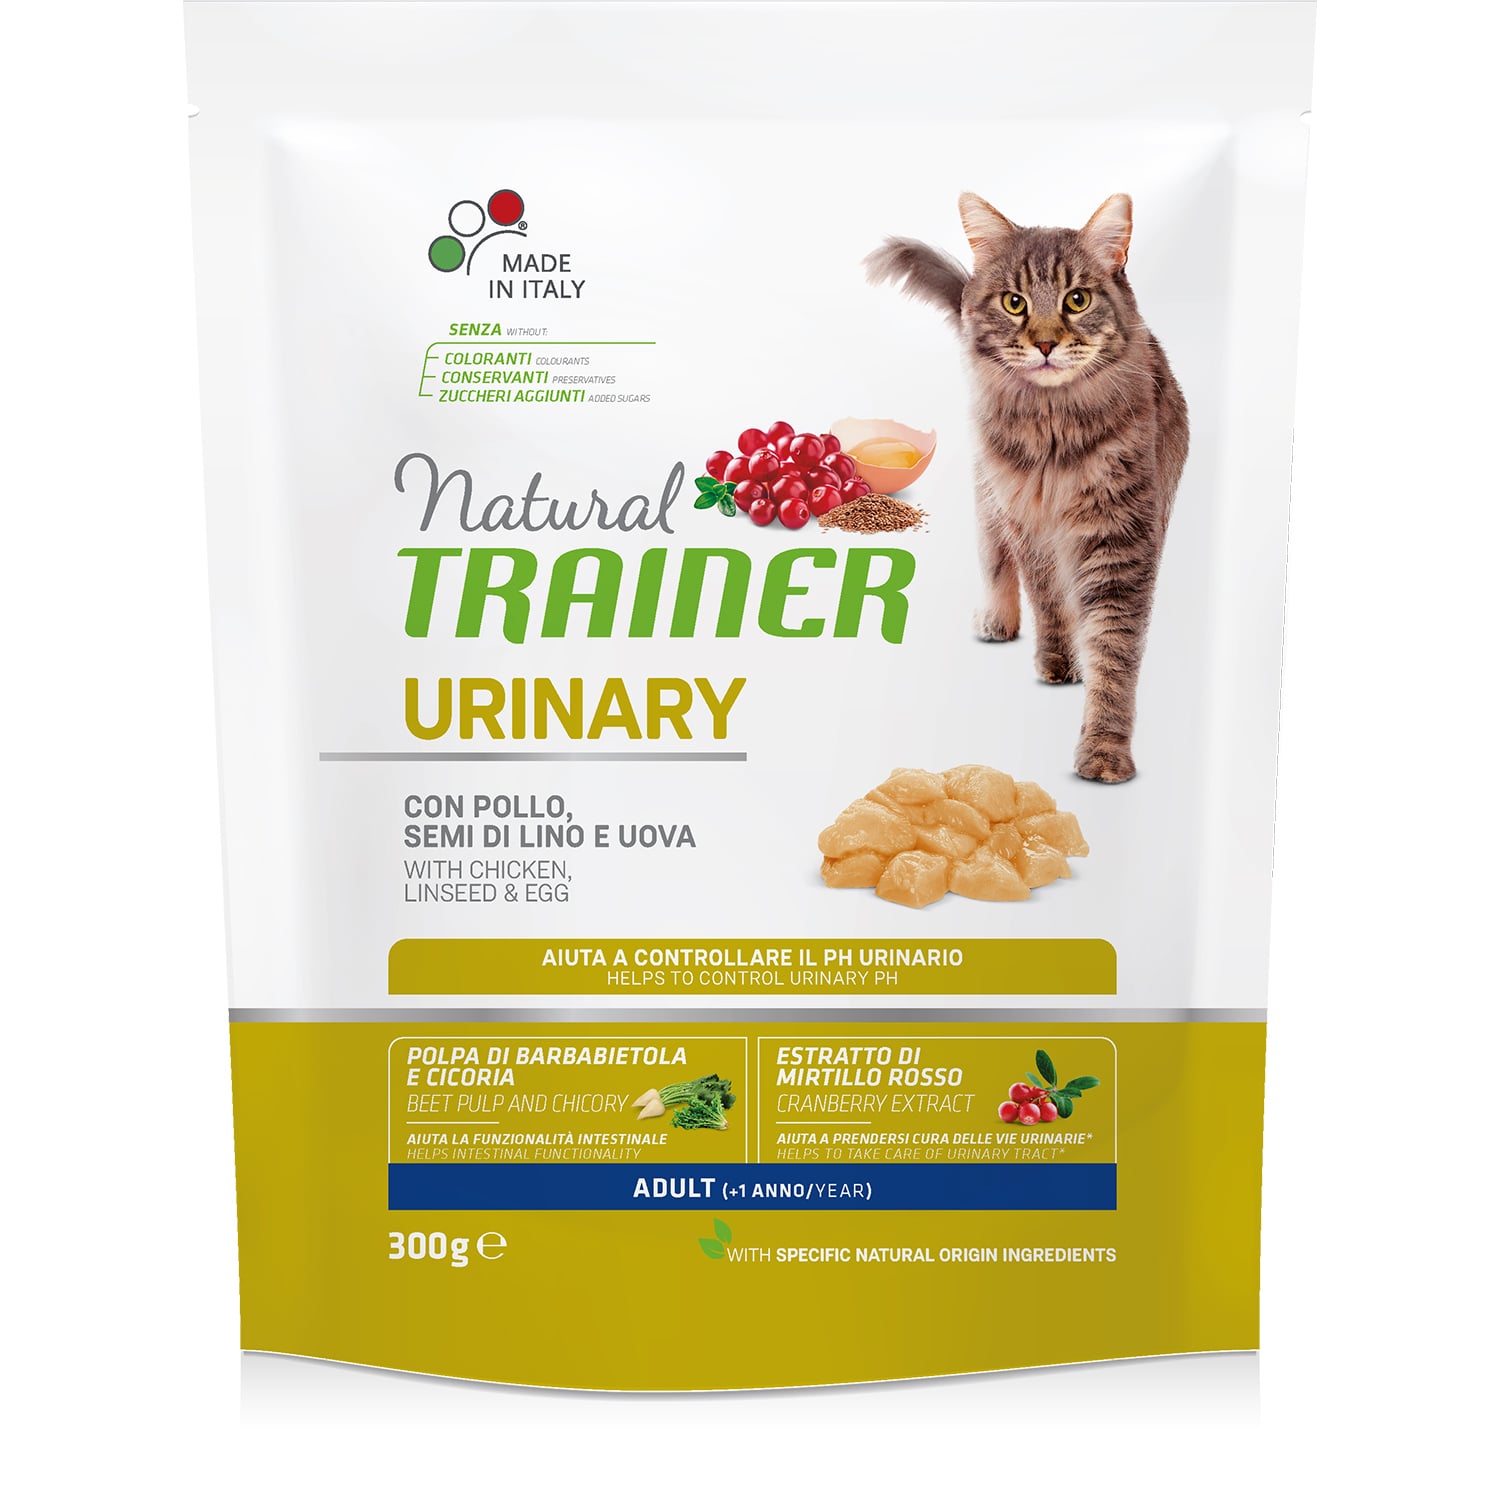 Natural Trainer Cat Urinary сухой корм с курицей для взрослых кошек c чувствительной мочеполовой системой